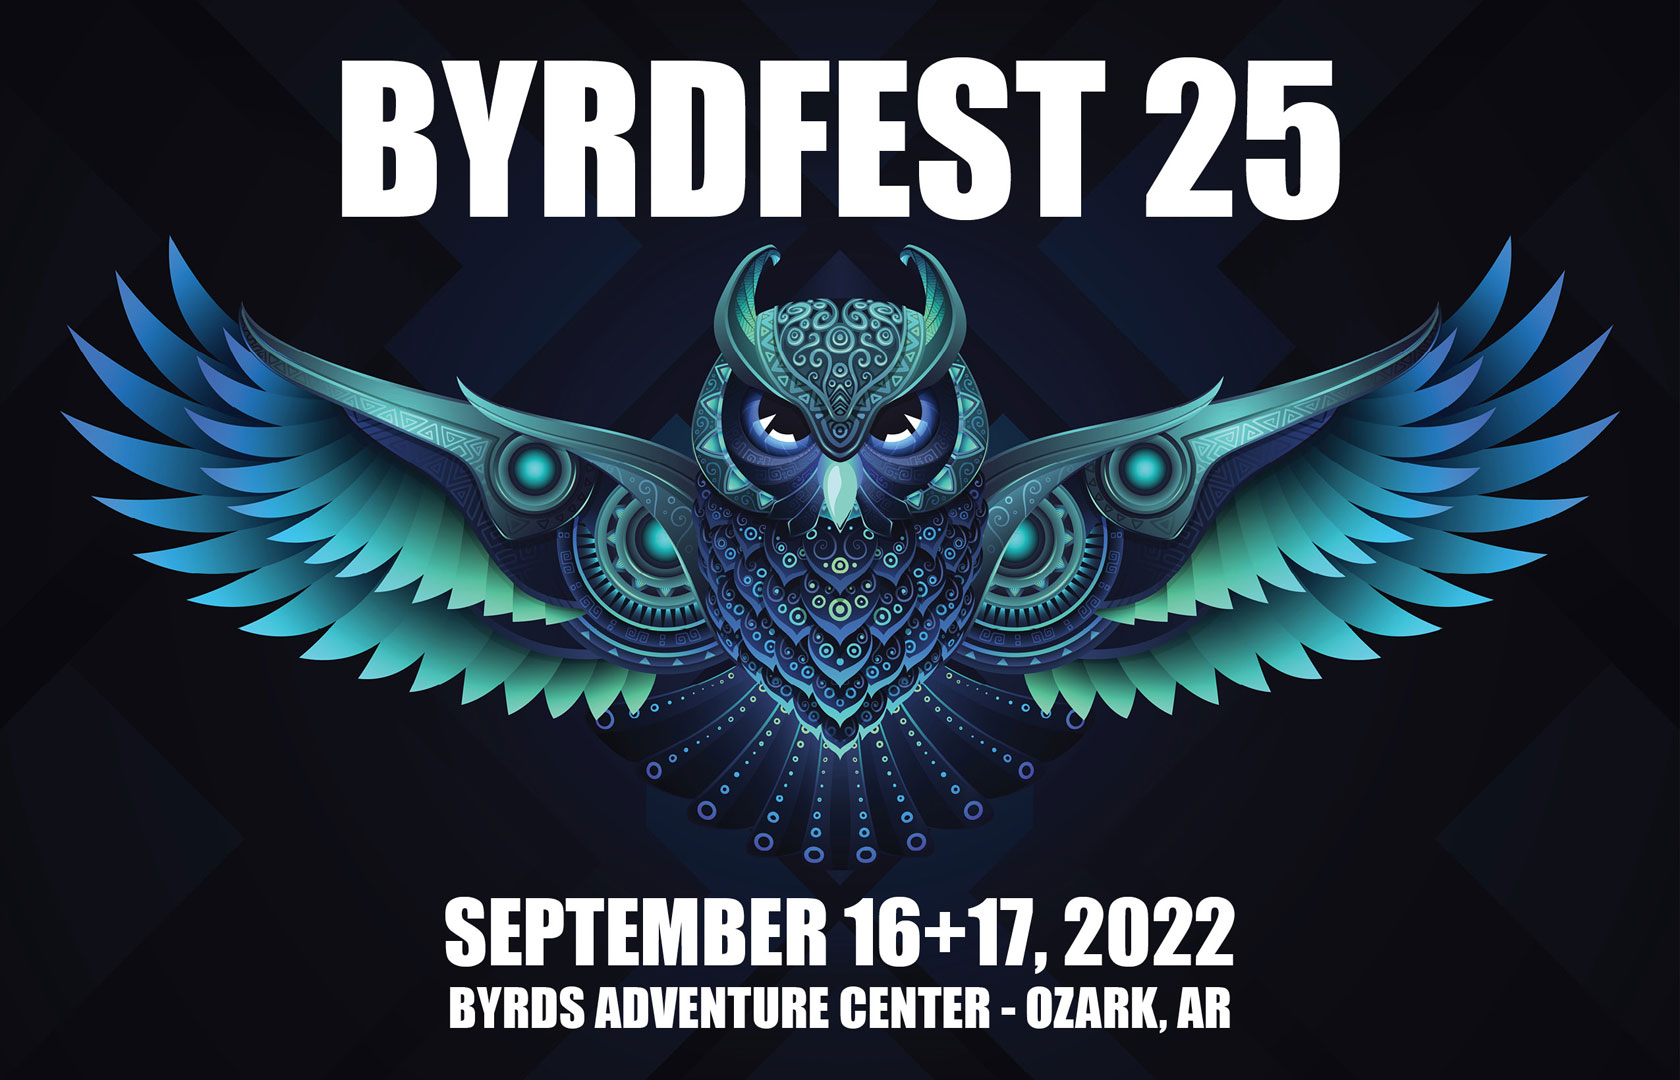 Byrdfest 25 music festival